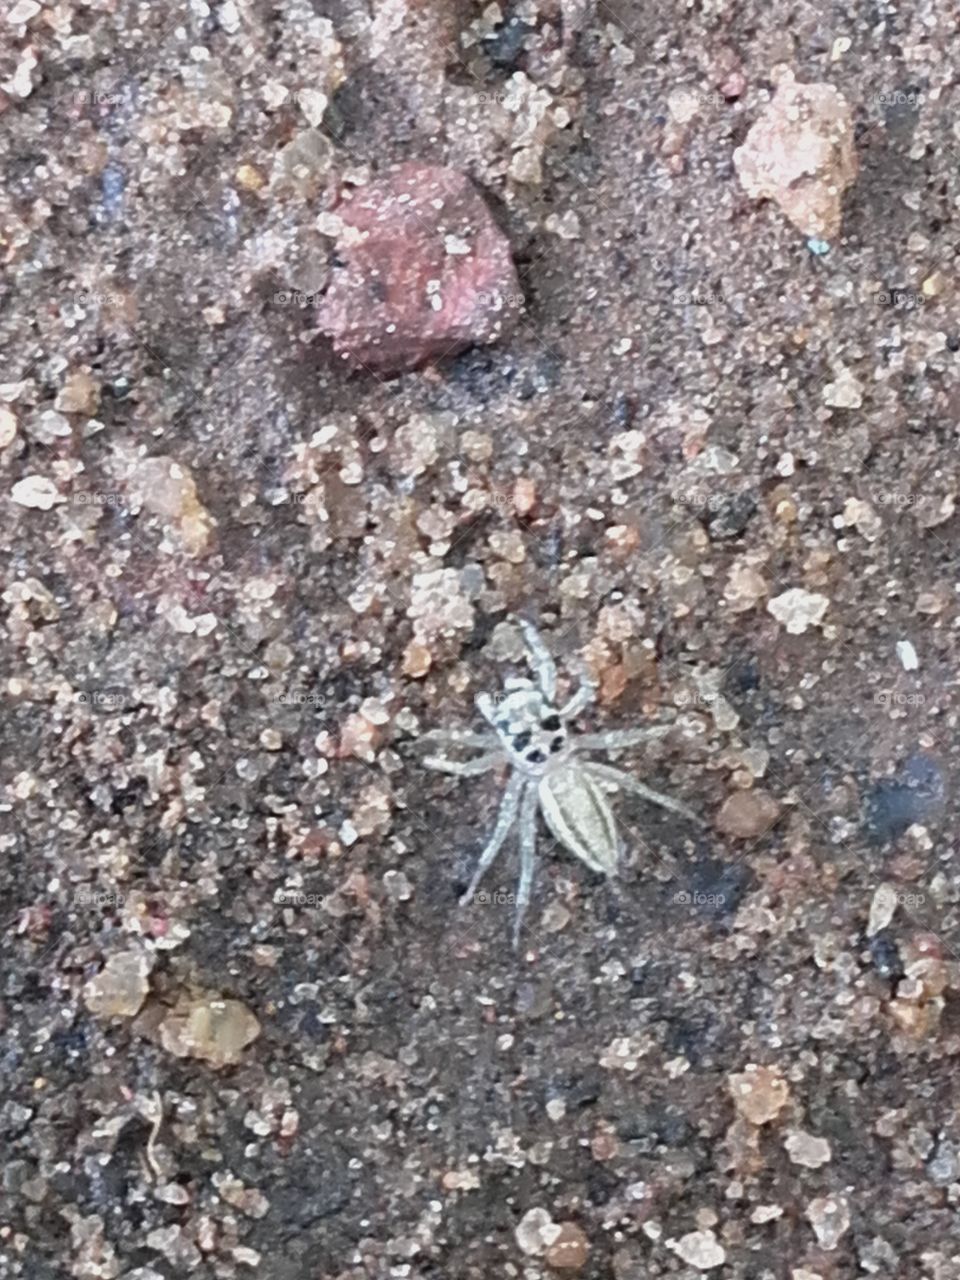 Little Spider